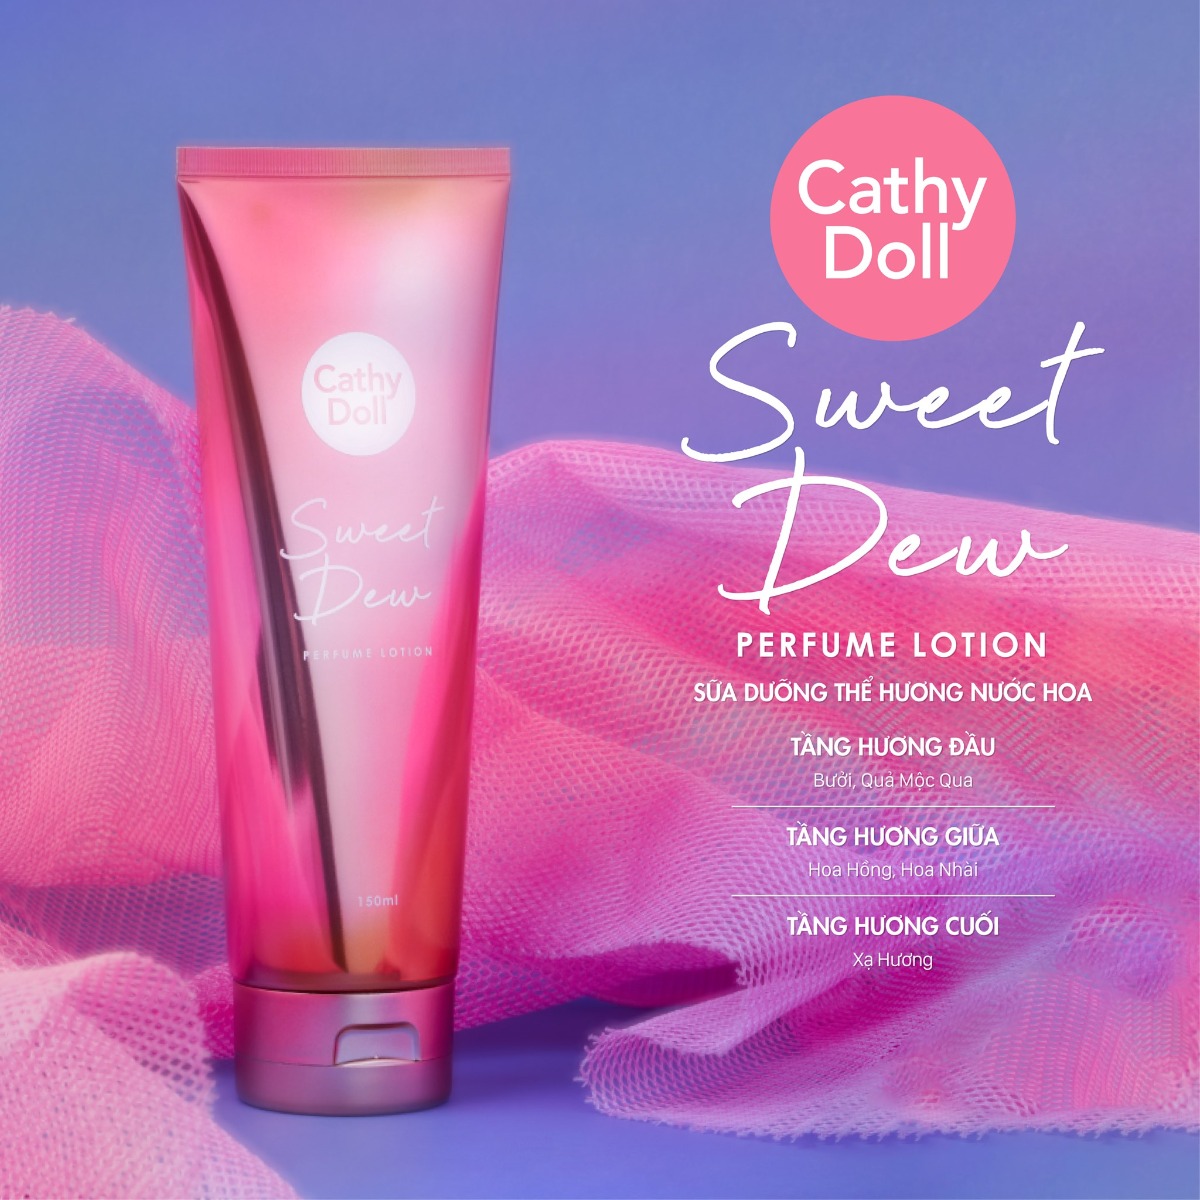 Sữa Dưỡng Thể Hương Nước Hoa Cathy Doll Sweet Dew